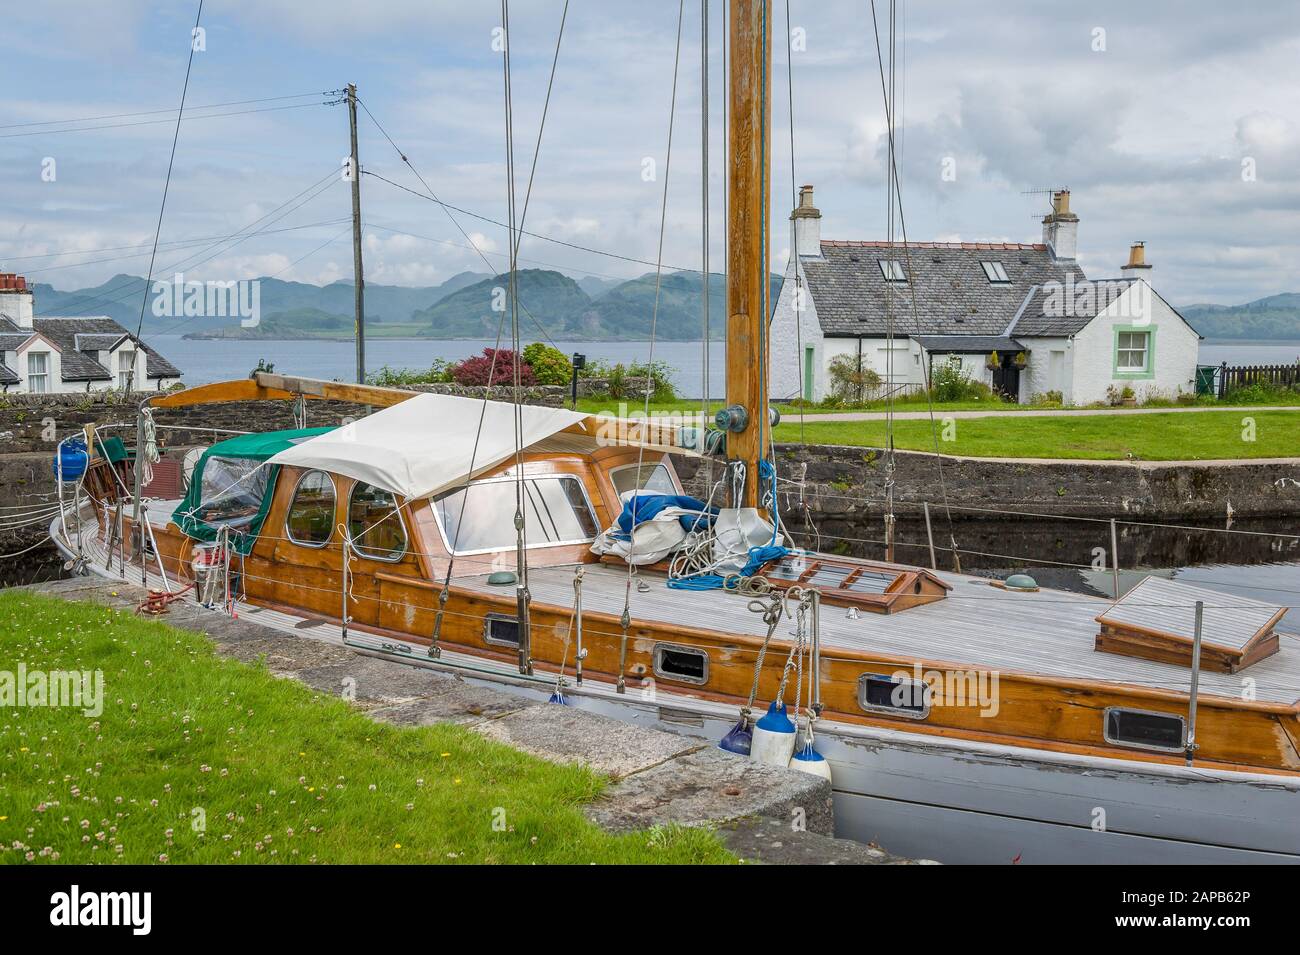 Retro wooden sailng boat docked at Crinan canal, Scotland. Stock Photo